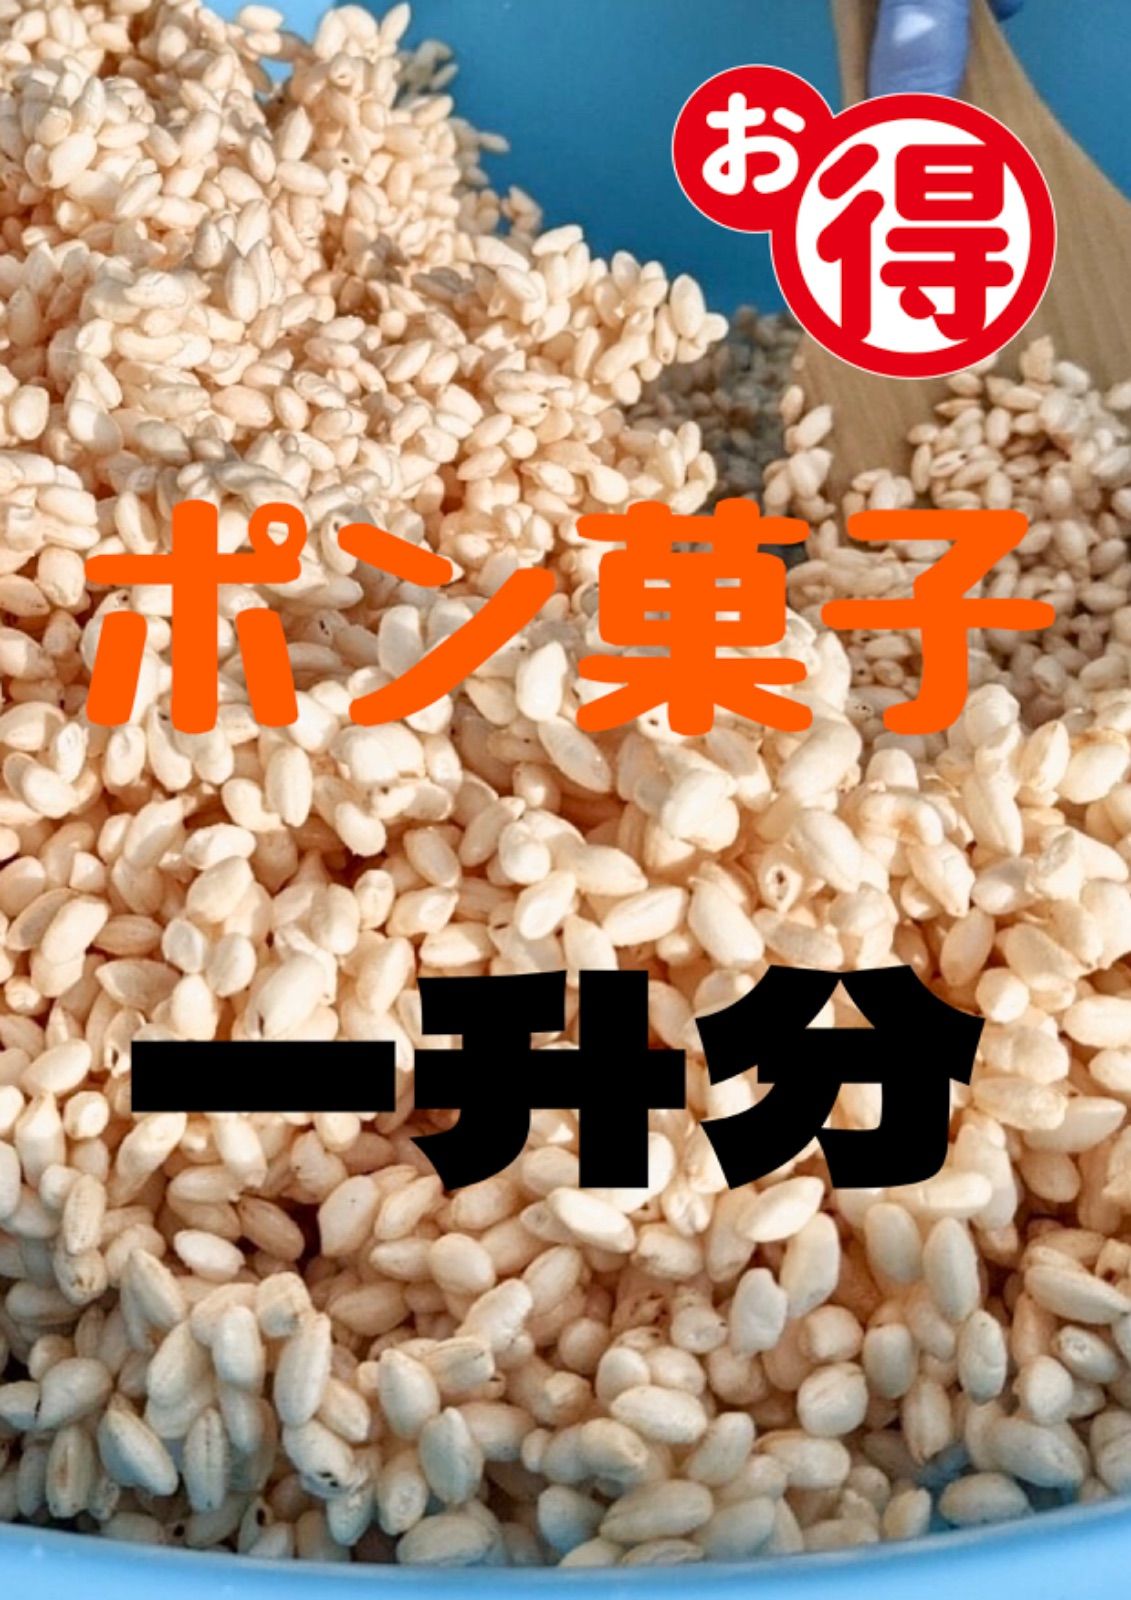 ポン菓子 米一升分 砂糖700gかたまり - 米・雑穀・粉類